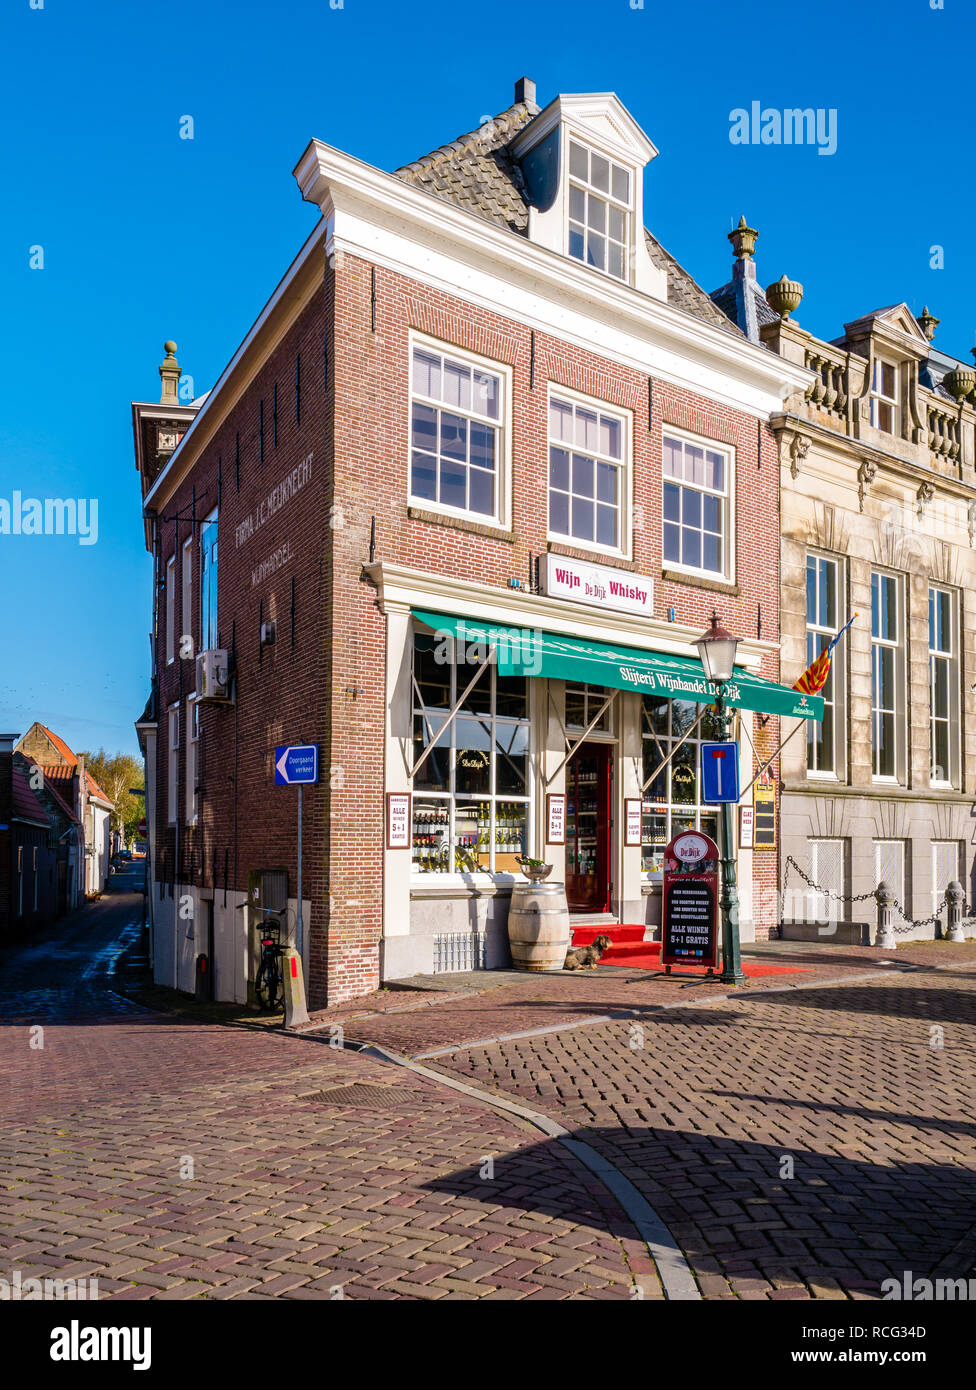 Street Scene mit Wein Shop im historischen Haus in der Altstadt von Enkhuizen, Noord-Holland, Niederlande Stockfoto